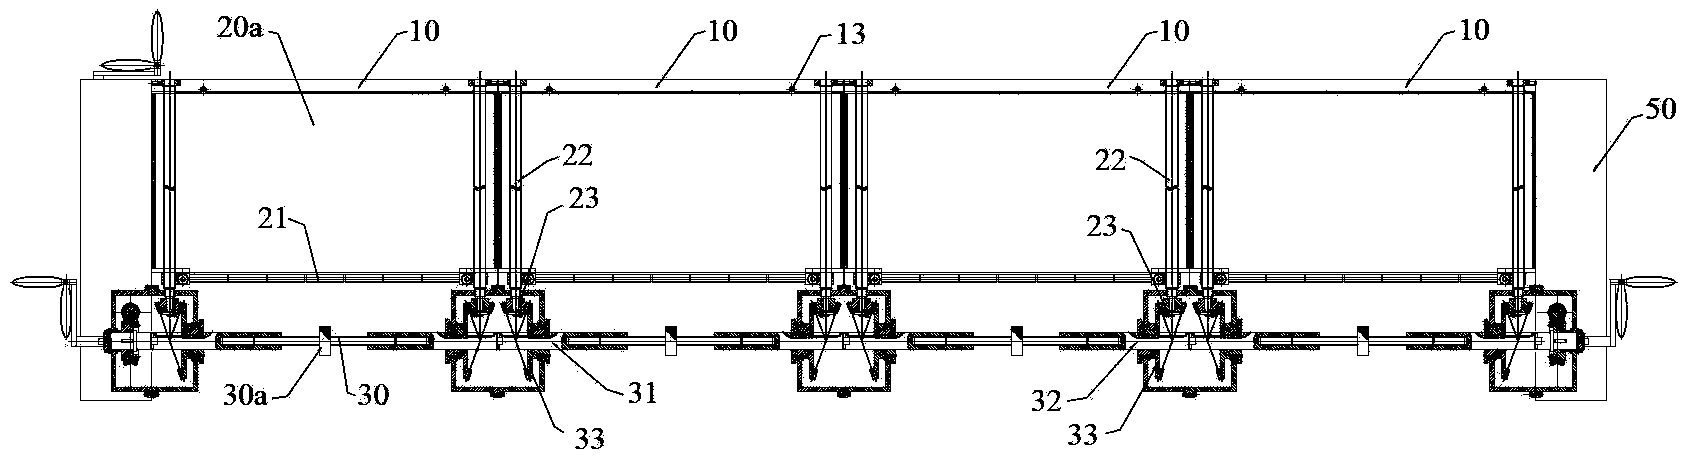 Unit module combined air valve